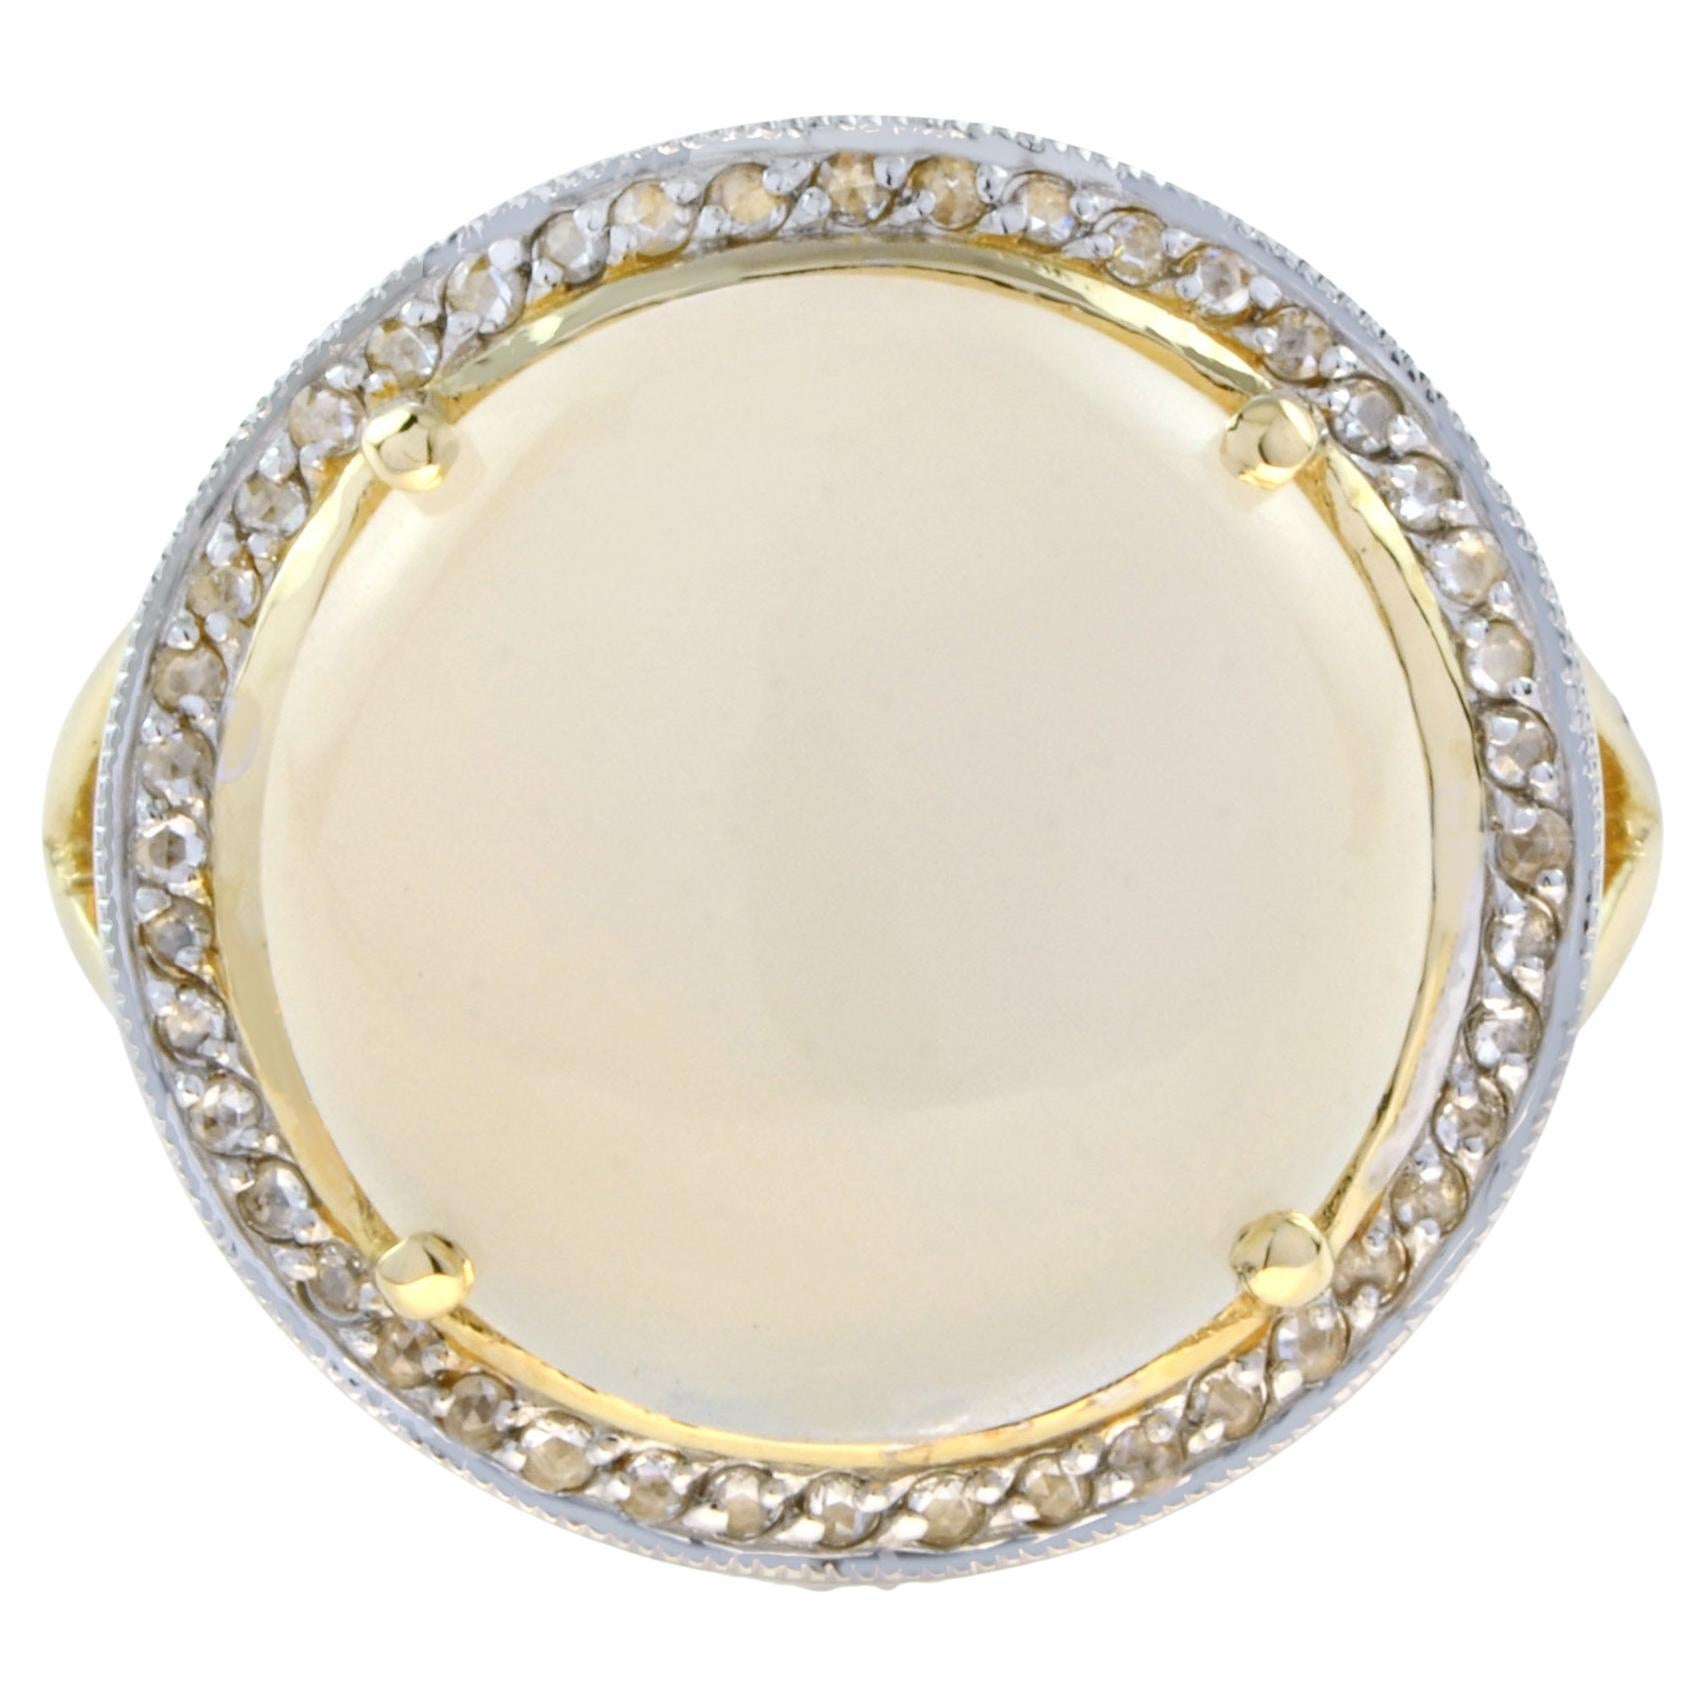 Bague cocktail à tige fendue en or jaune 9 carats avec pierre de lune ronde et halo de diamants